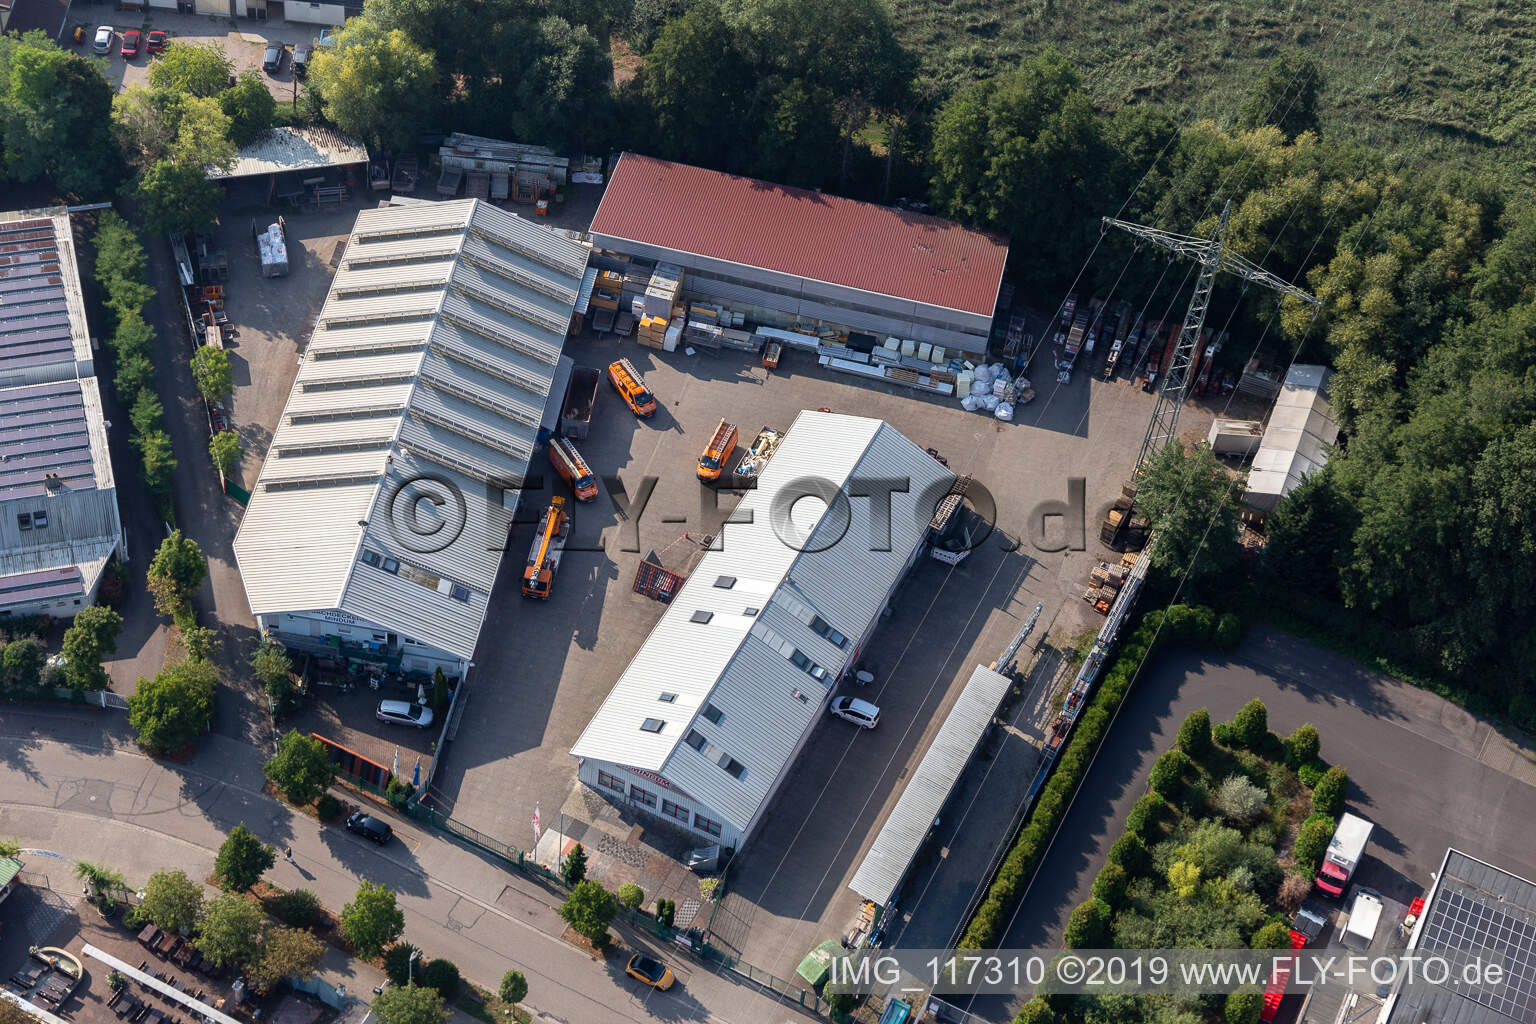 Luftbild von Dachdeckerei, Gerüstbau und Bauspenglerei Mindum, im Gewerbgegebiet Horst in Kandel im Bundesland Rheinland-Pfalz, Deutschland